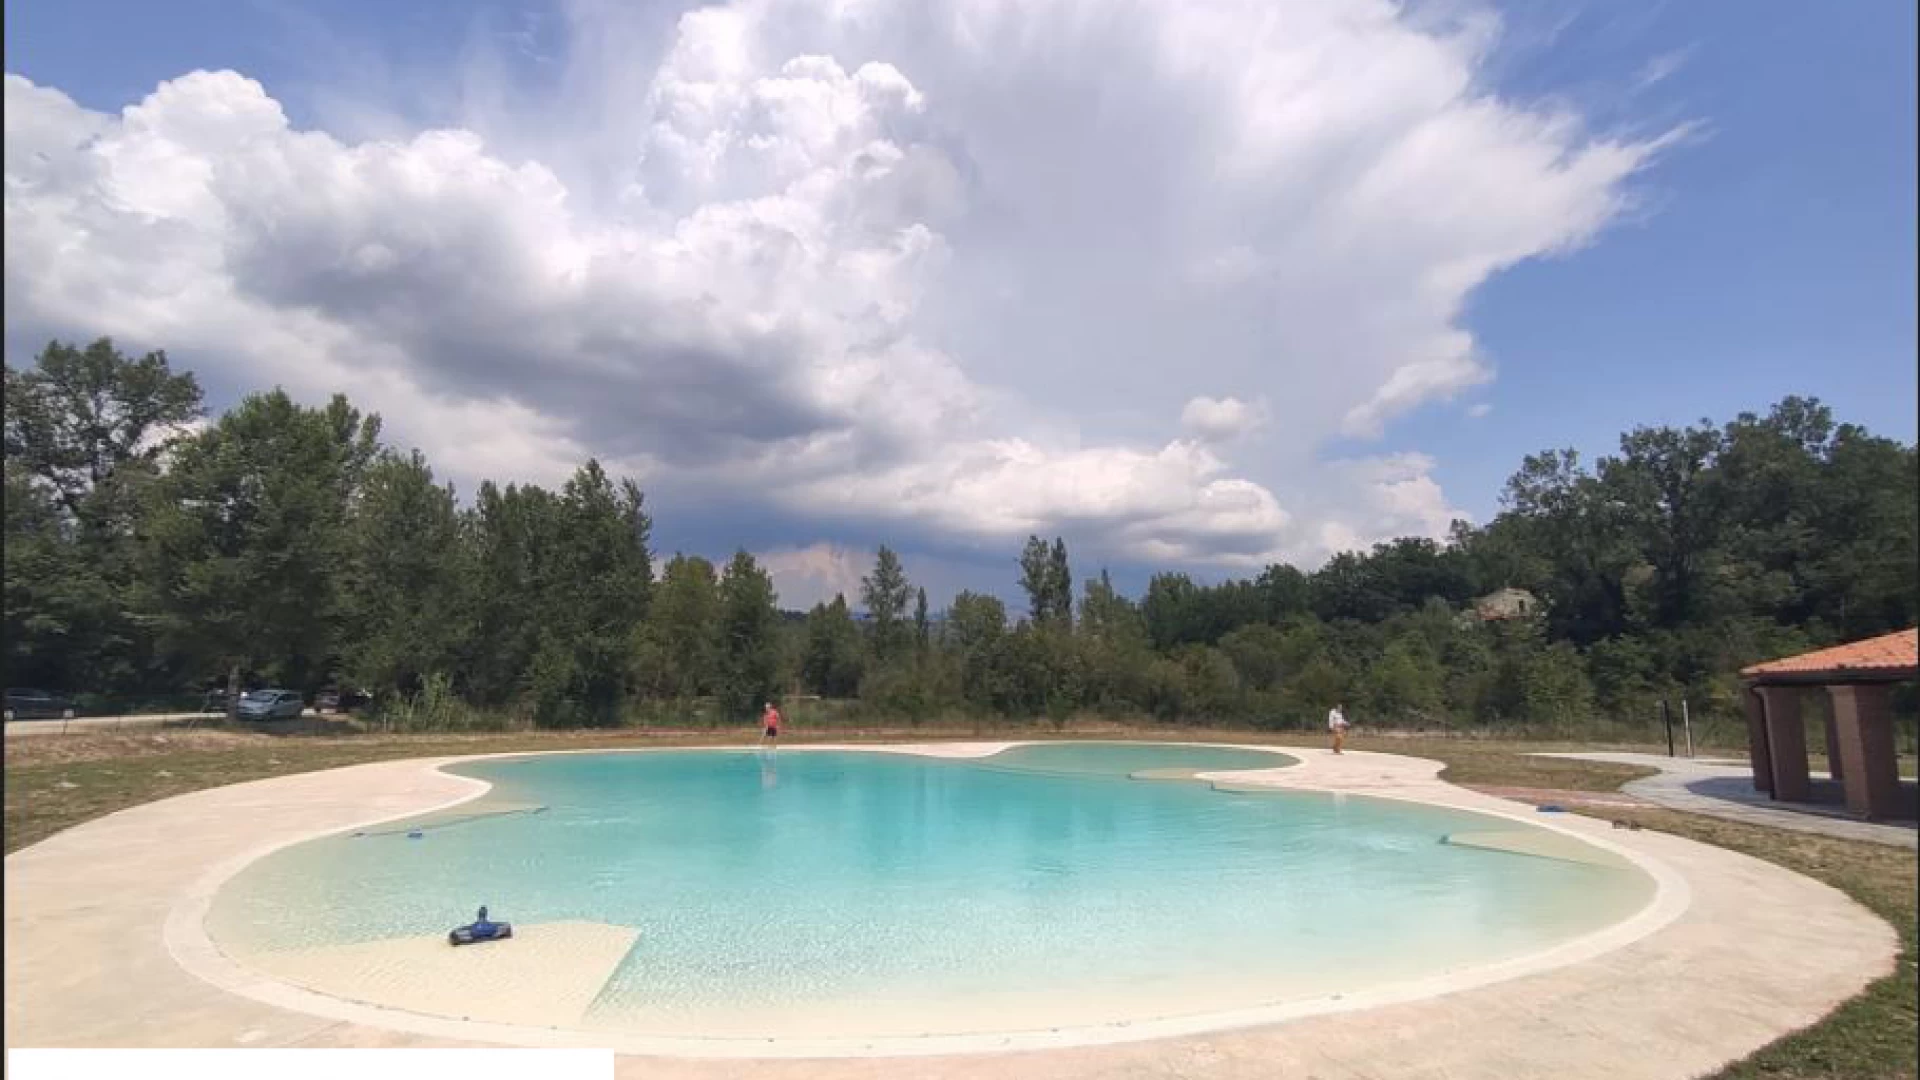 Colli a Volturno: giovedì 11 agosto la cerimonia di apertura della piscina comunale del parco fluviale. Un evento atteso da tempo. L’impianto funzionerà grazie all’impegno della Pro-Loco.